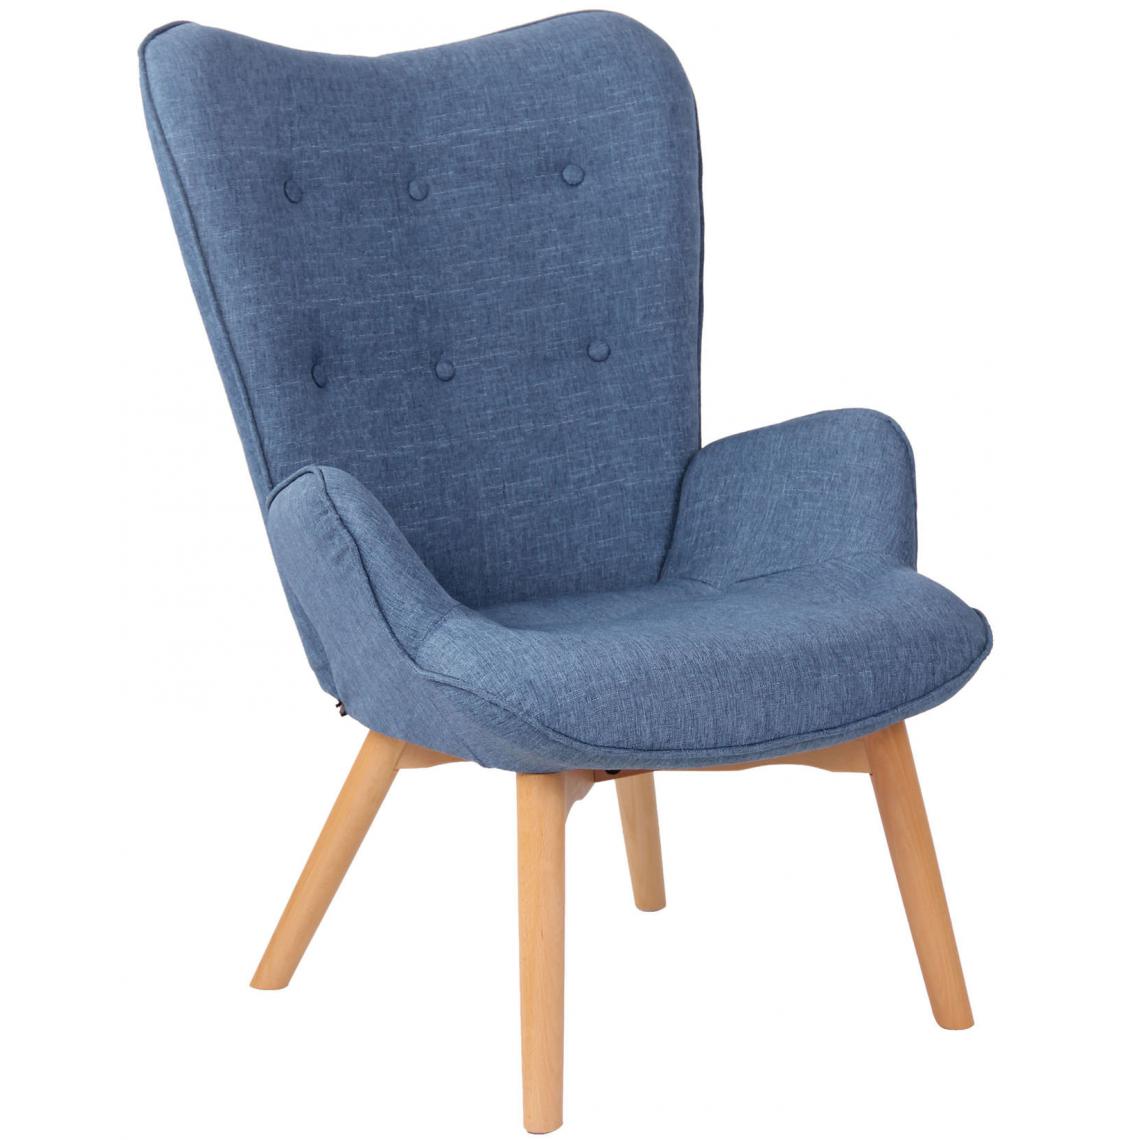 Icaverne - Stylé Chaise longue en tissu gamme Quito couleur bleu - Chaises